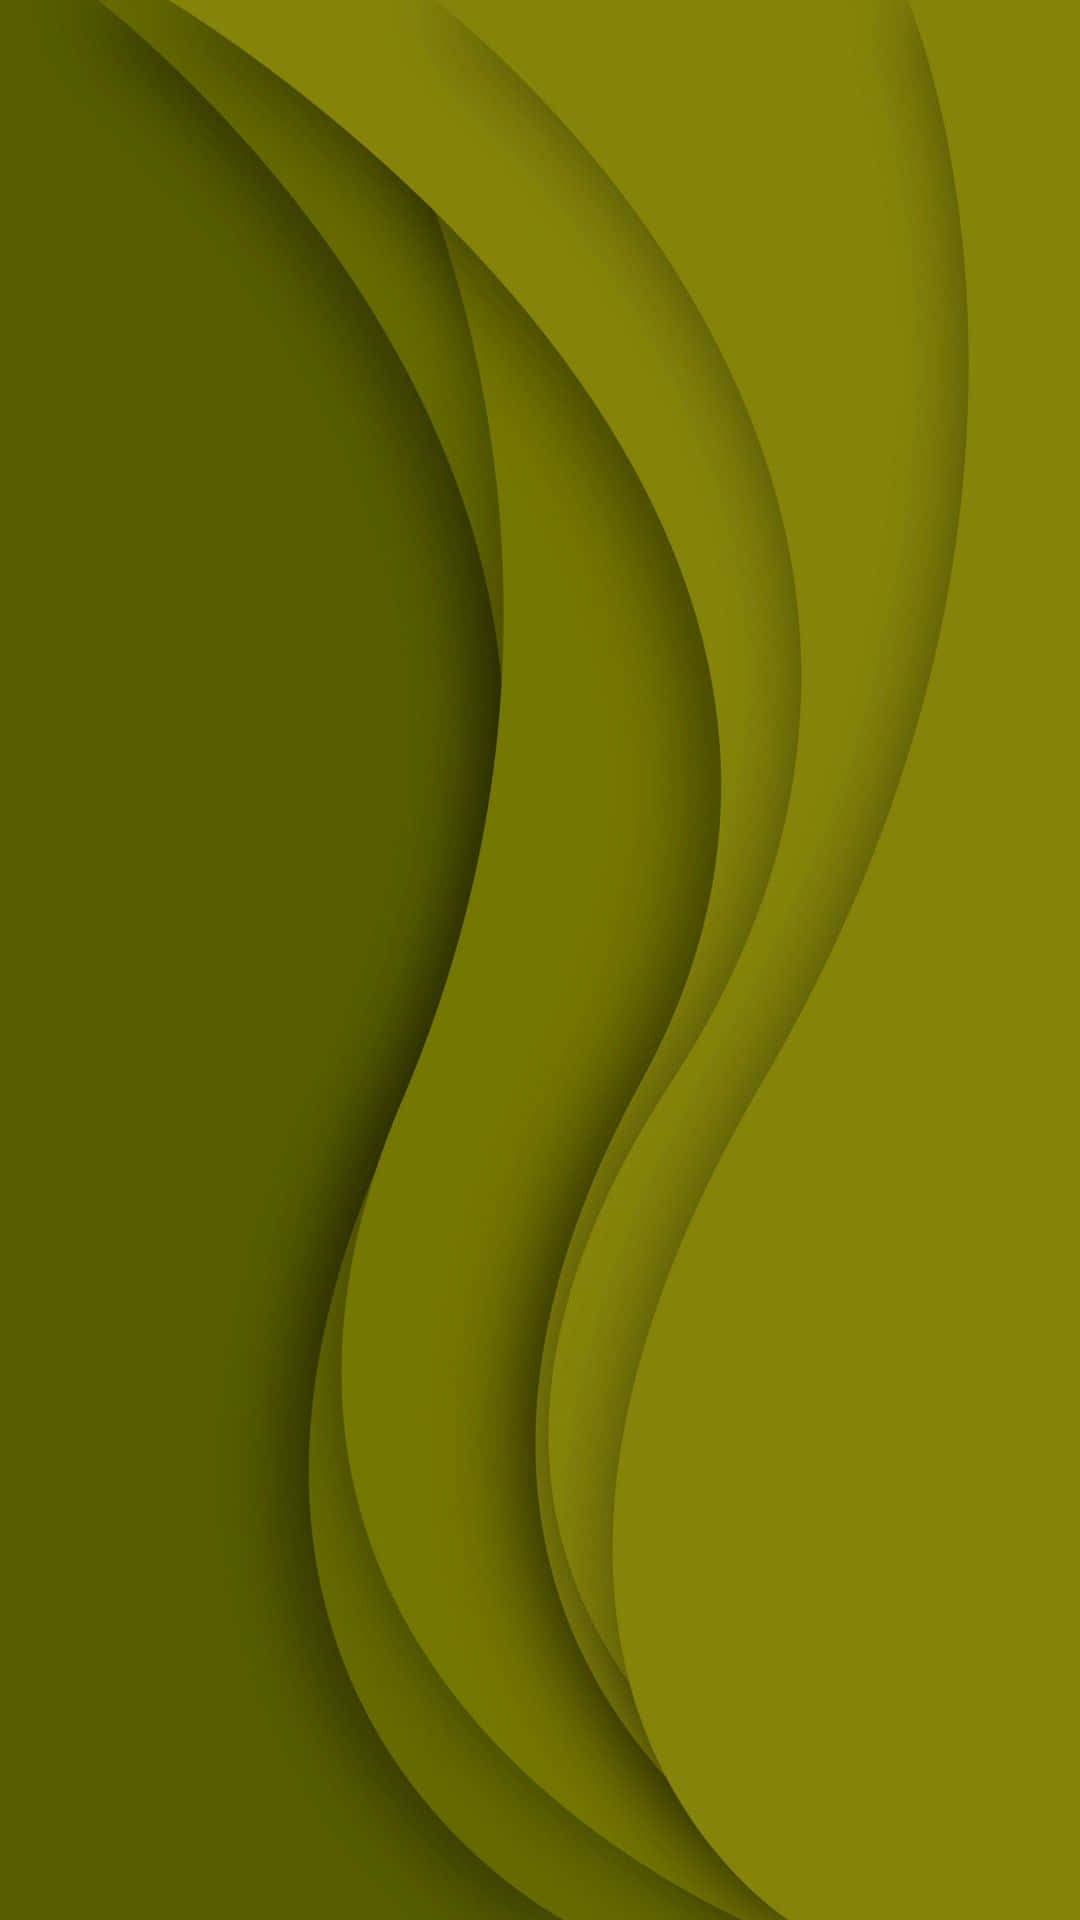 Et ikonisk, elegant og moderne olivengrøn Iphone. Wallpaper